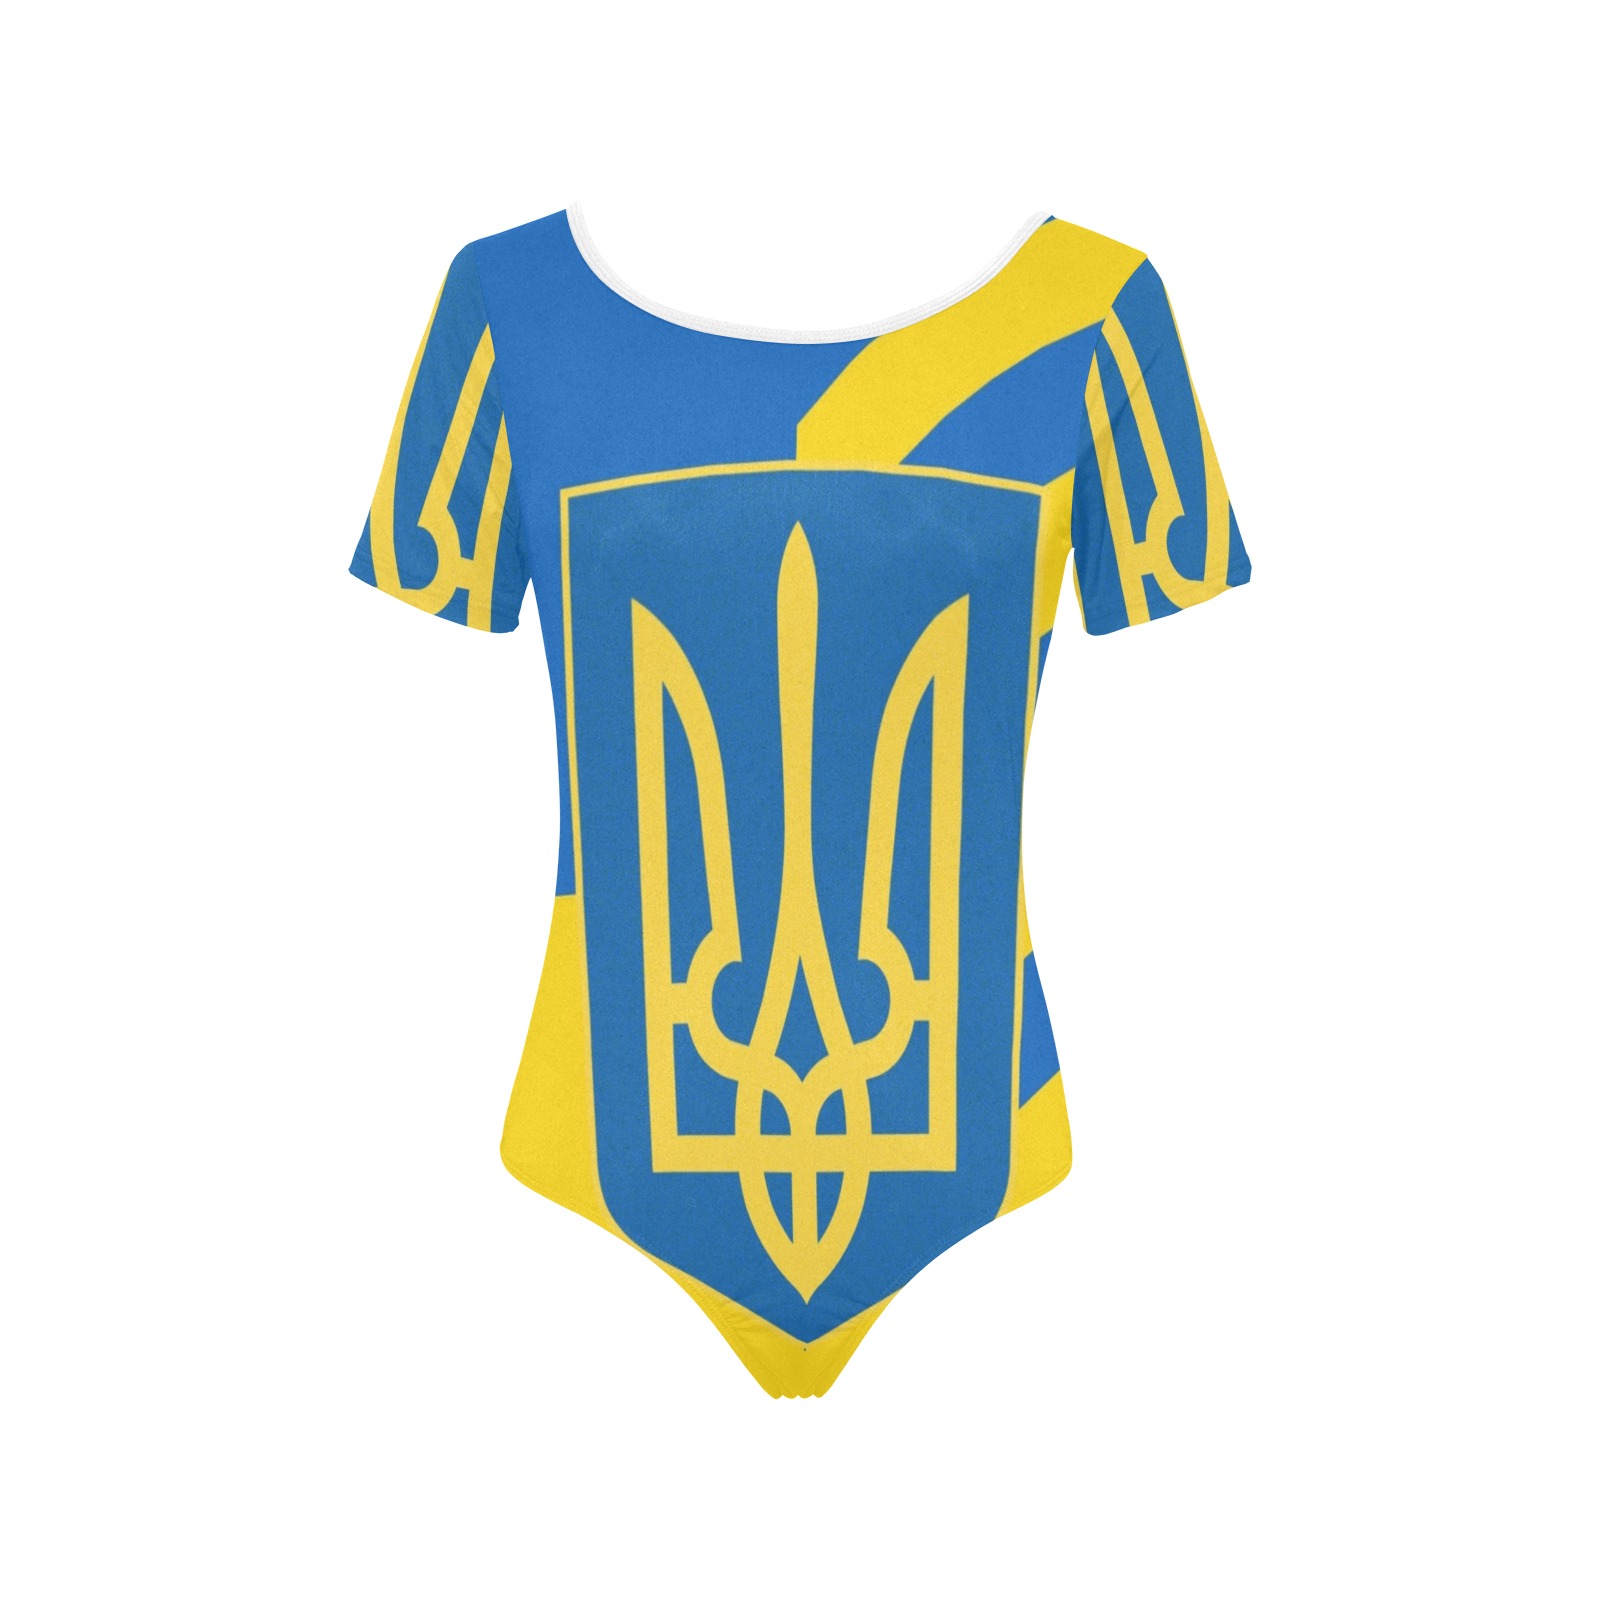 UKRAINE Women's Short Sleeve Bodysuit